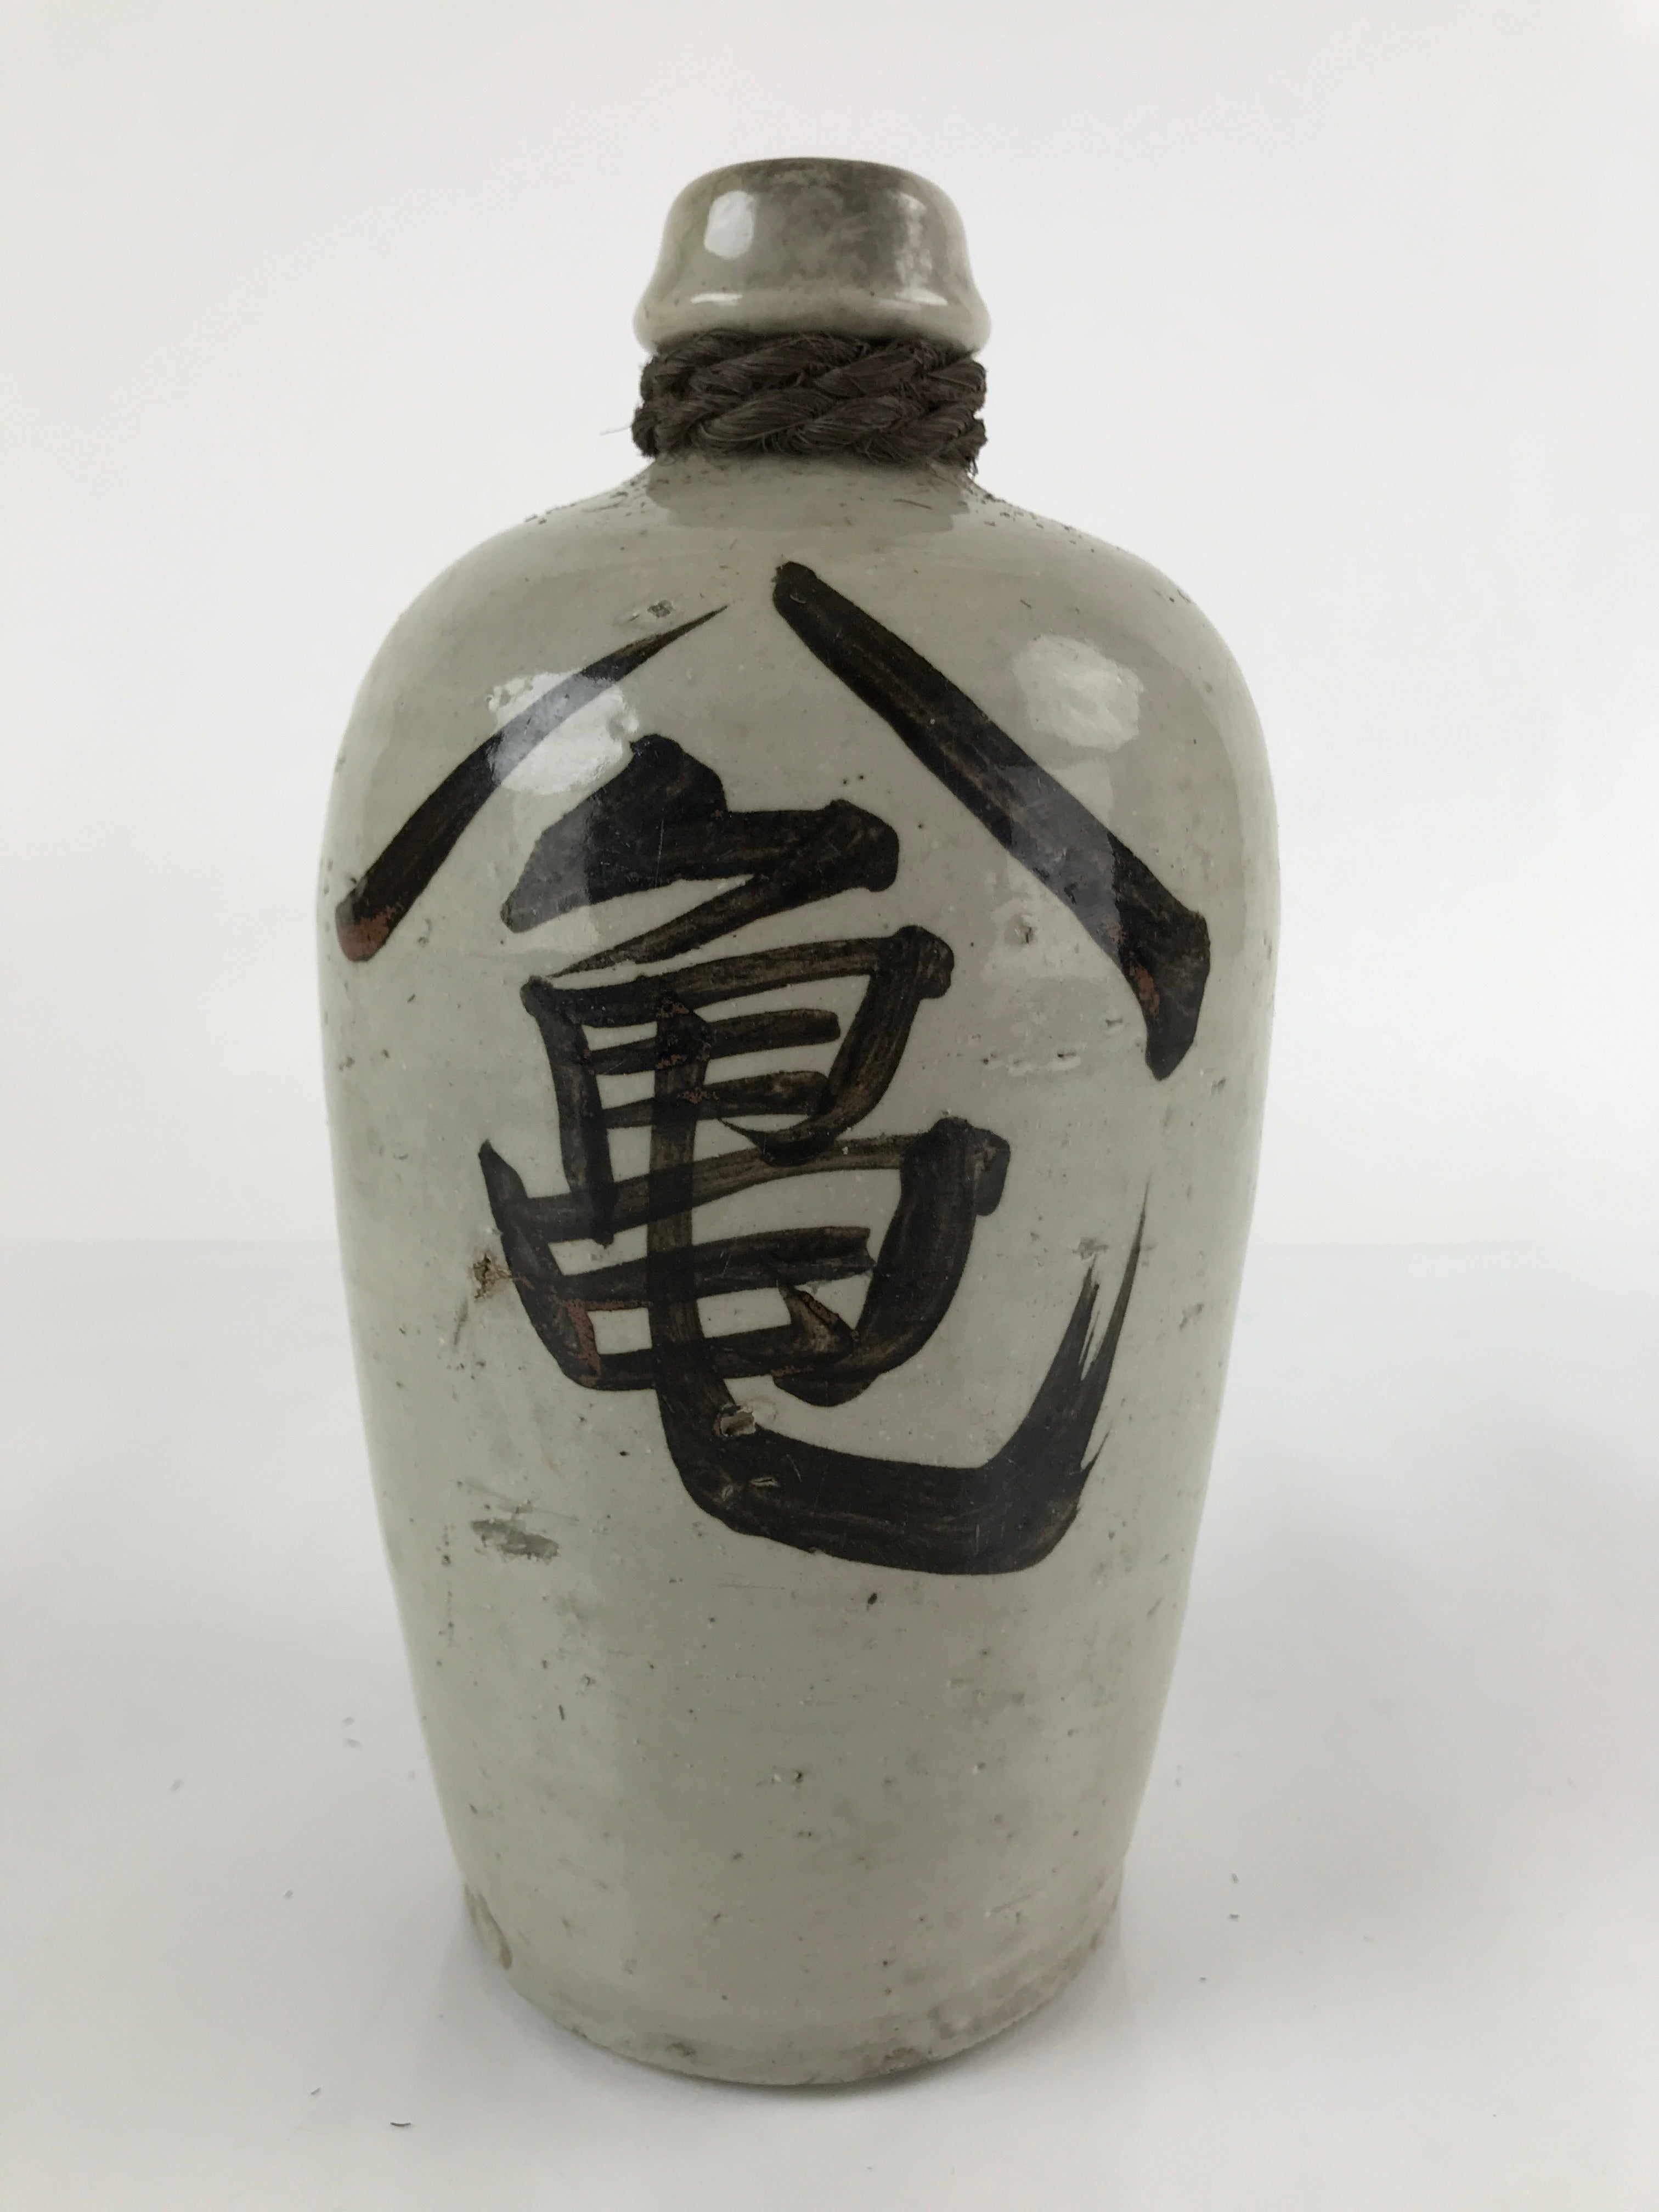 Antique C1900 Japanese Ceramic Sake Bottle Kayoi-Tokkuri Large Black Kanji TS648